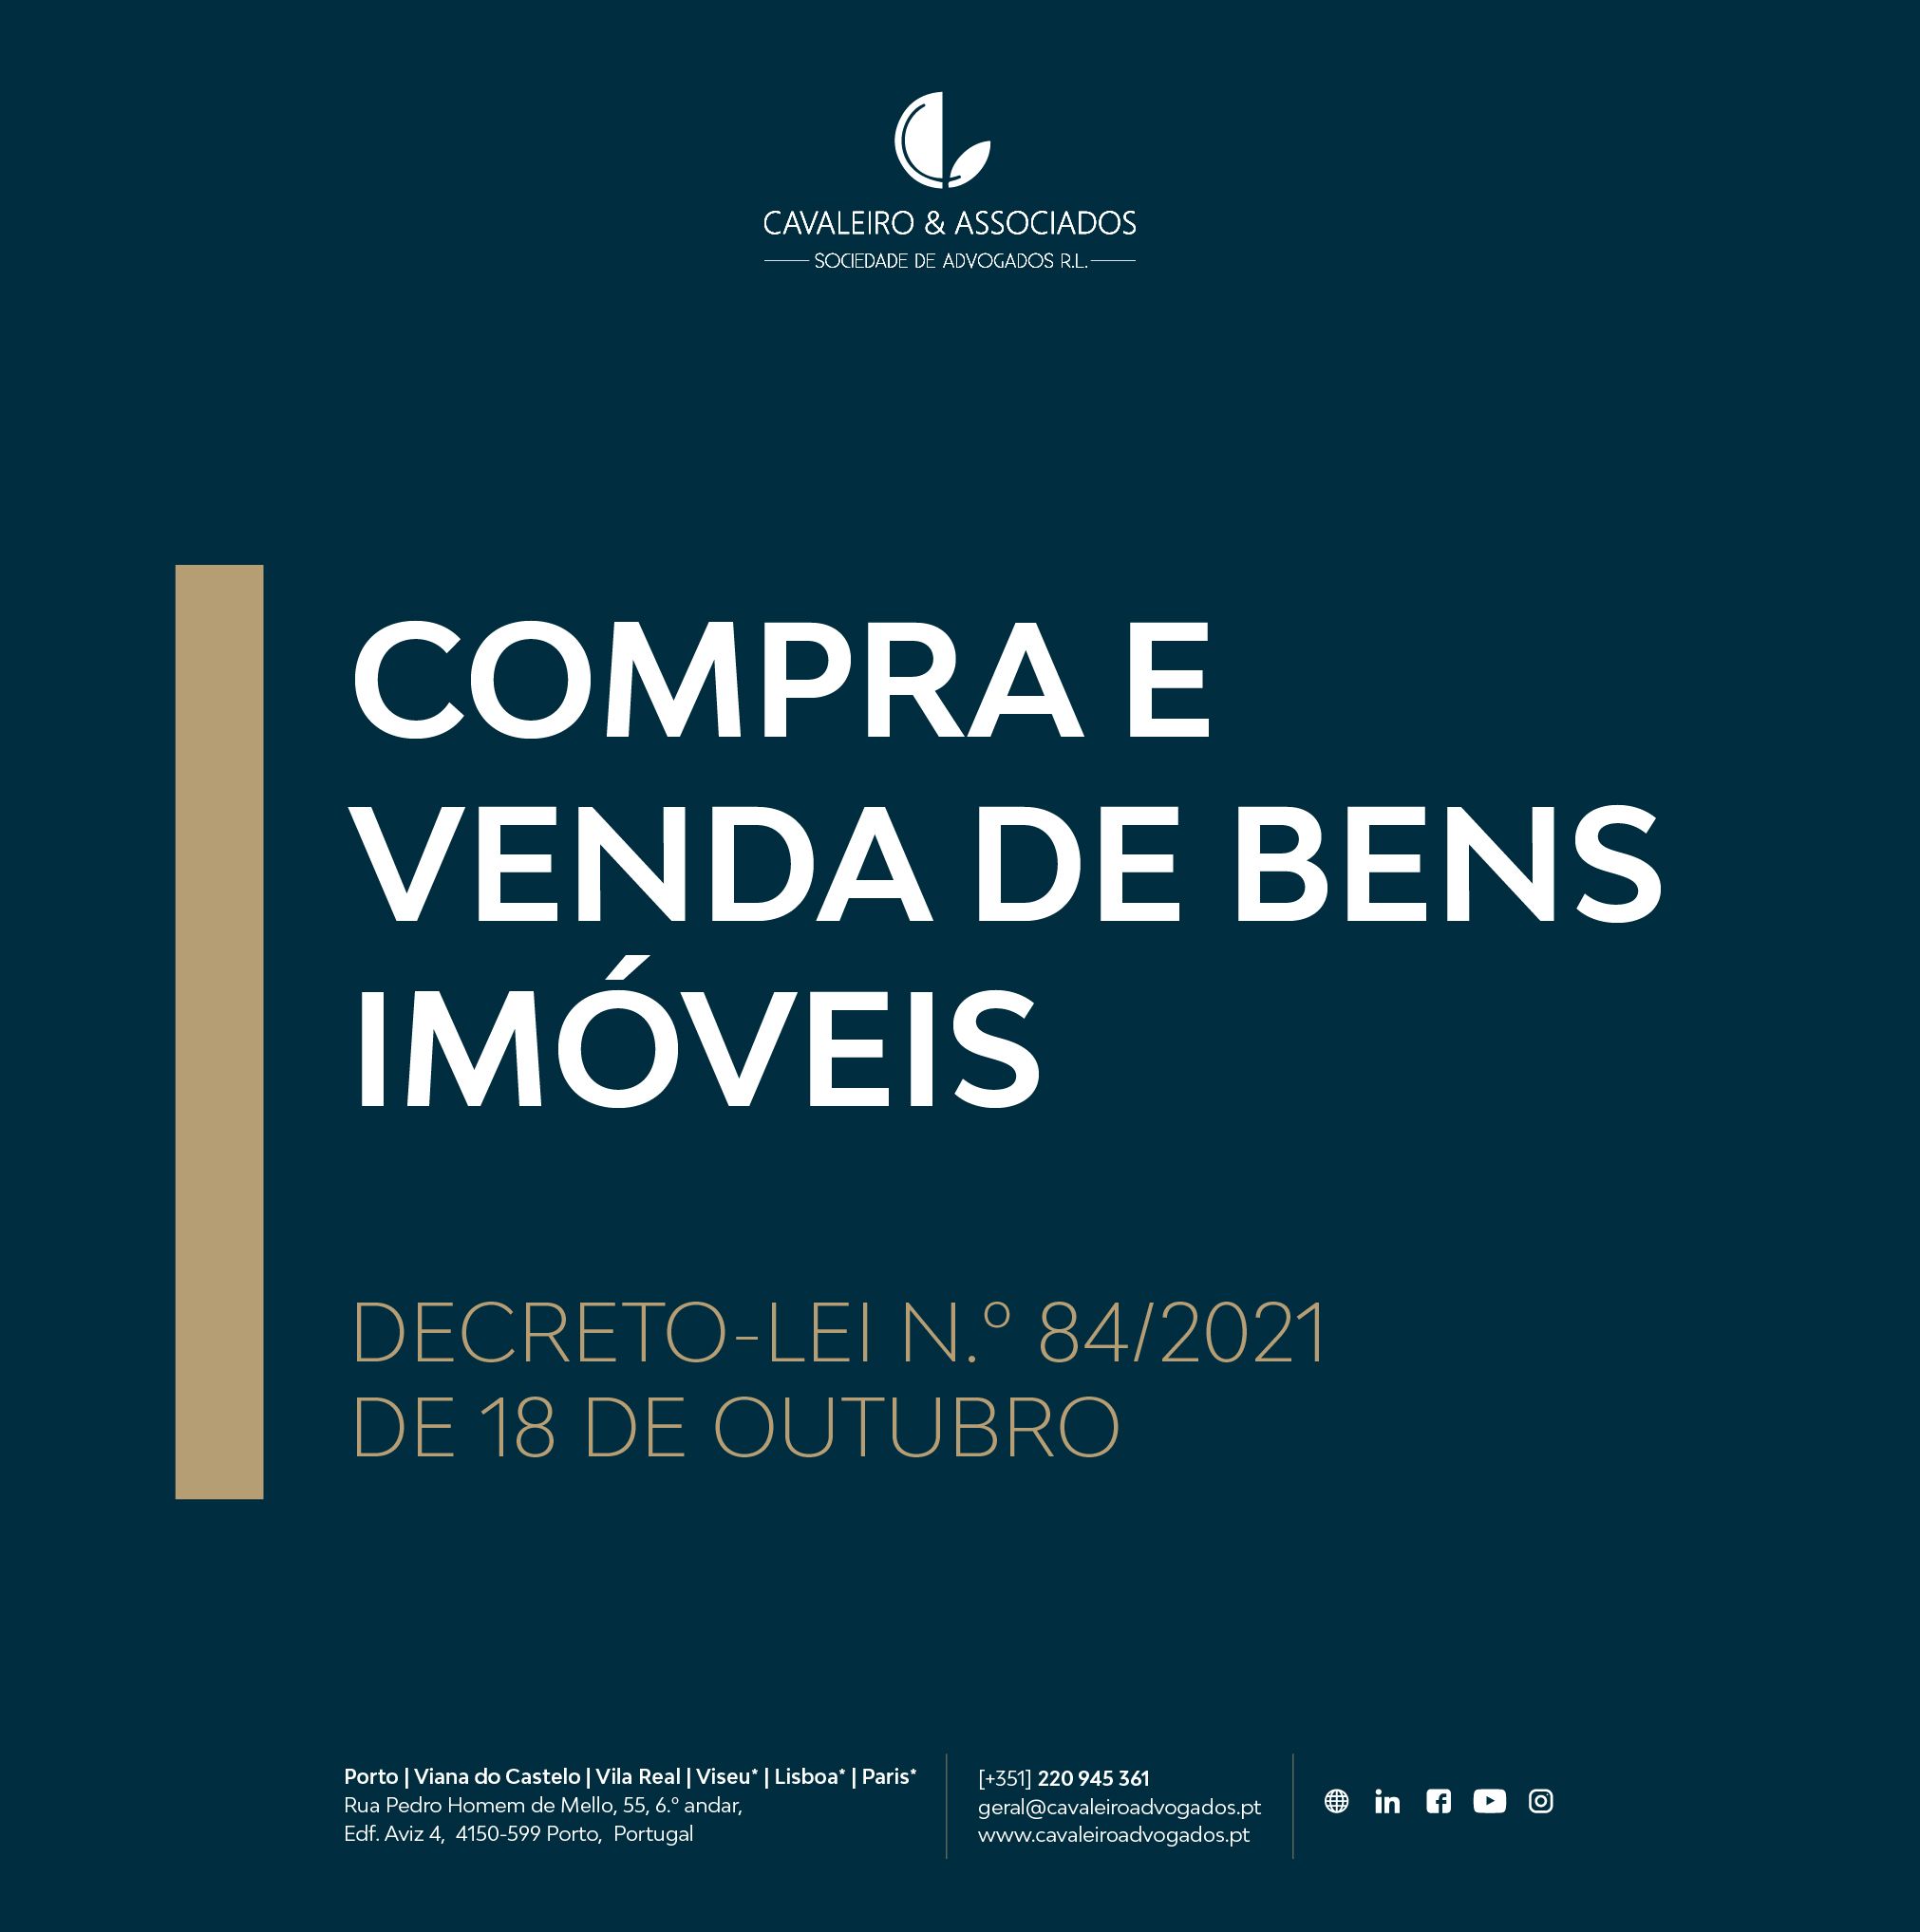 COMPRA E VENDA DE BENS IMÓVEIS | DECRETO-LEI N.º 84/2021, DE 18 DE OUTUBRO